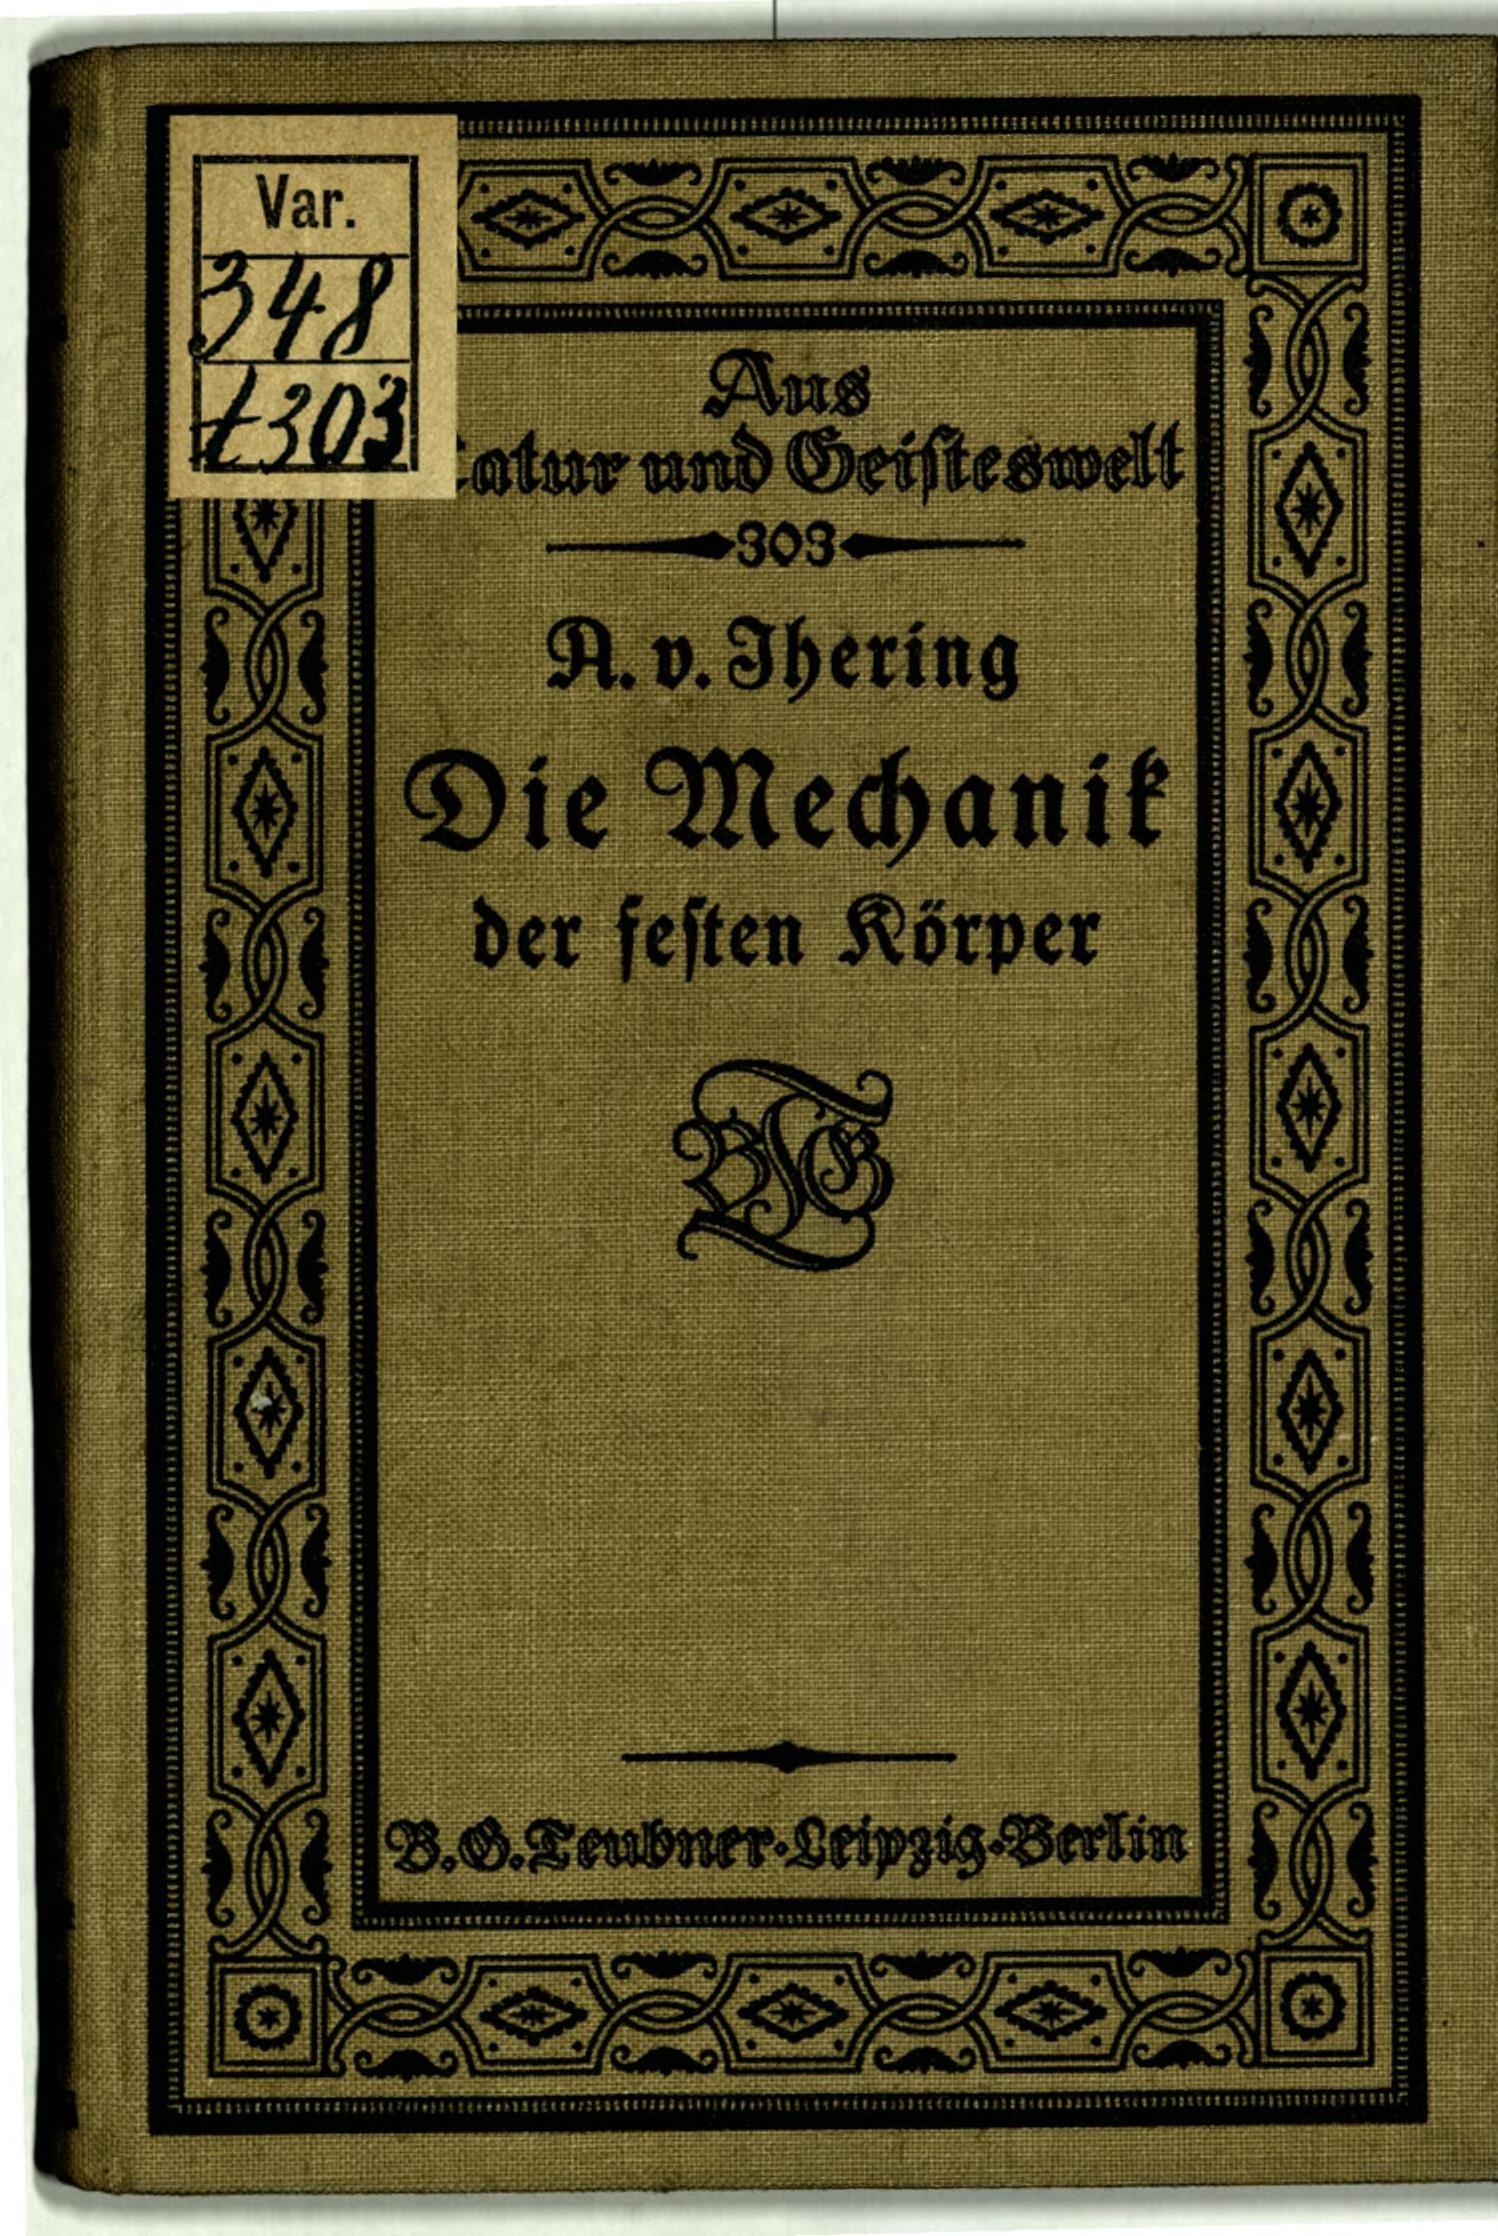 die_mechanik_der_festen_koerper00albrecht_von_ihering-1910&server=ia801806.us.archive.org&page=preview&